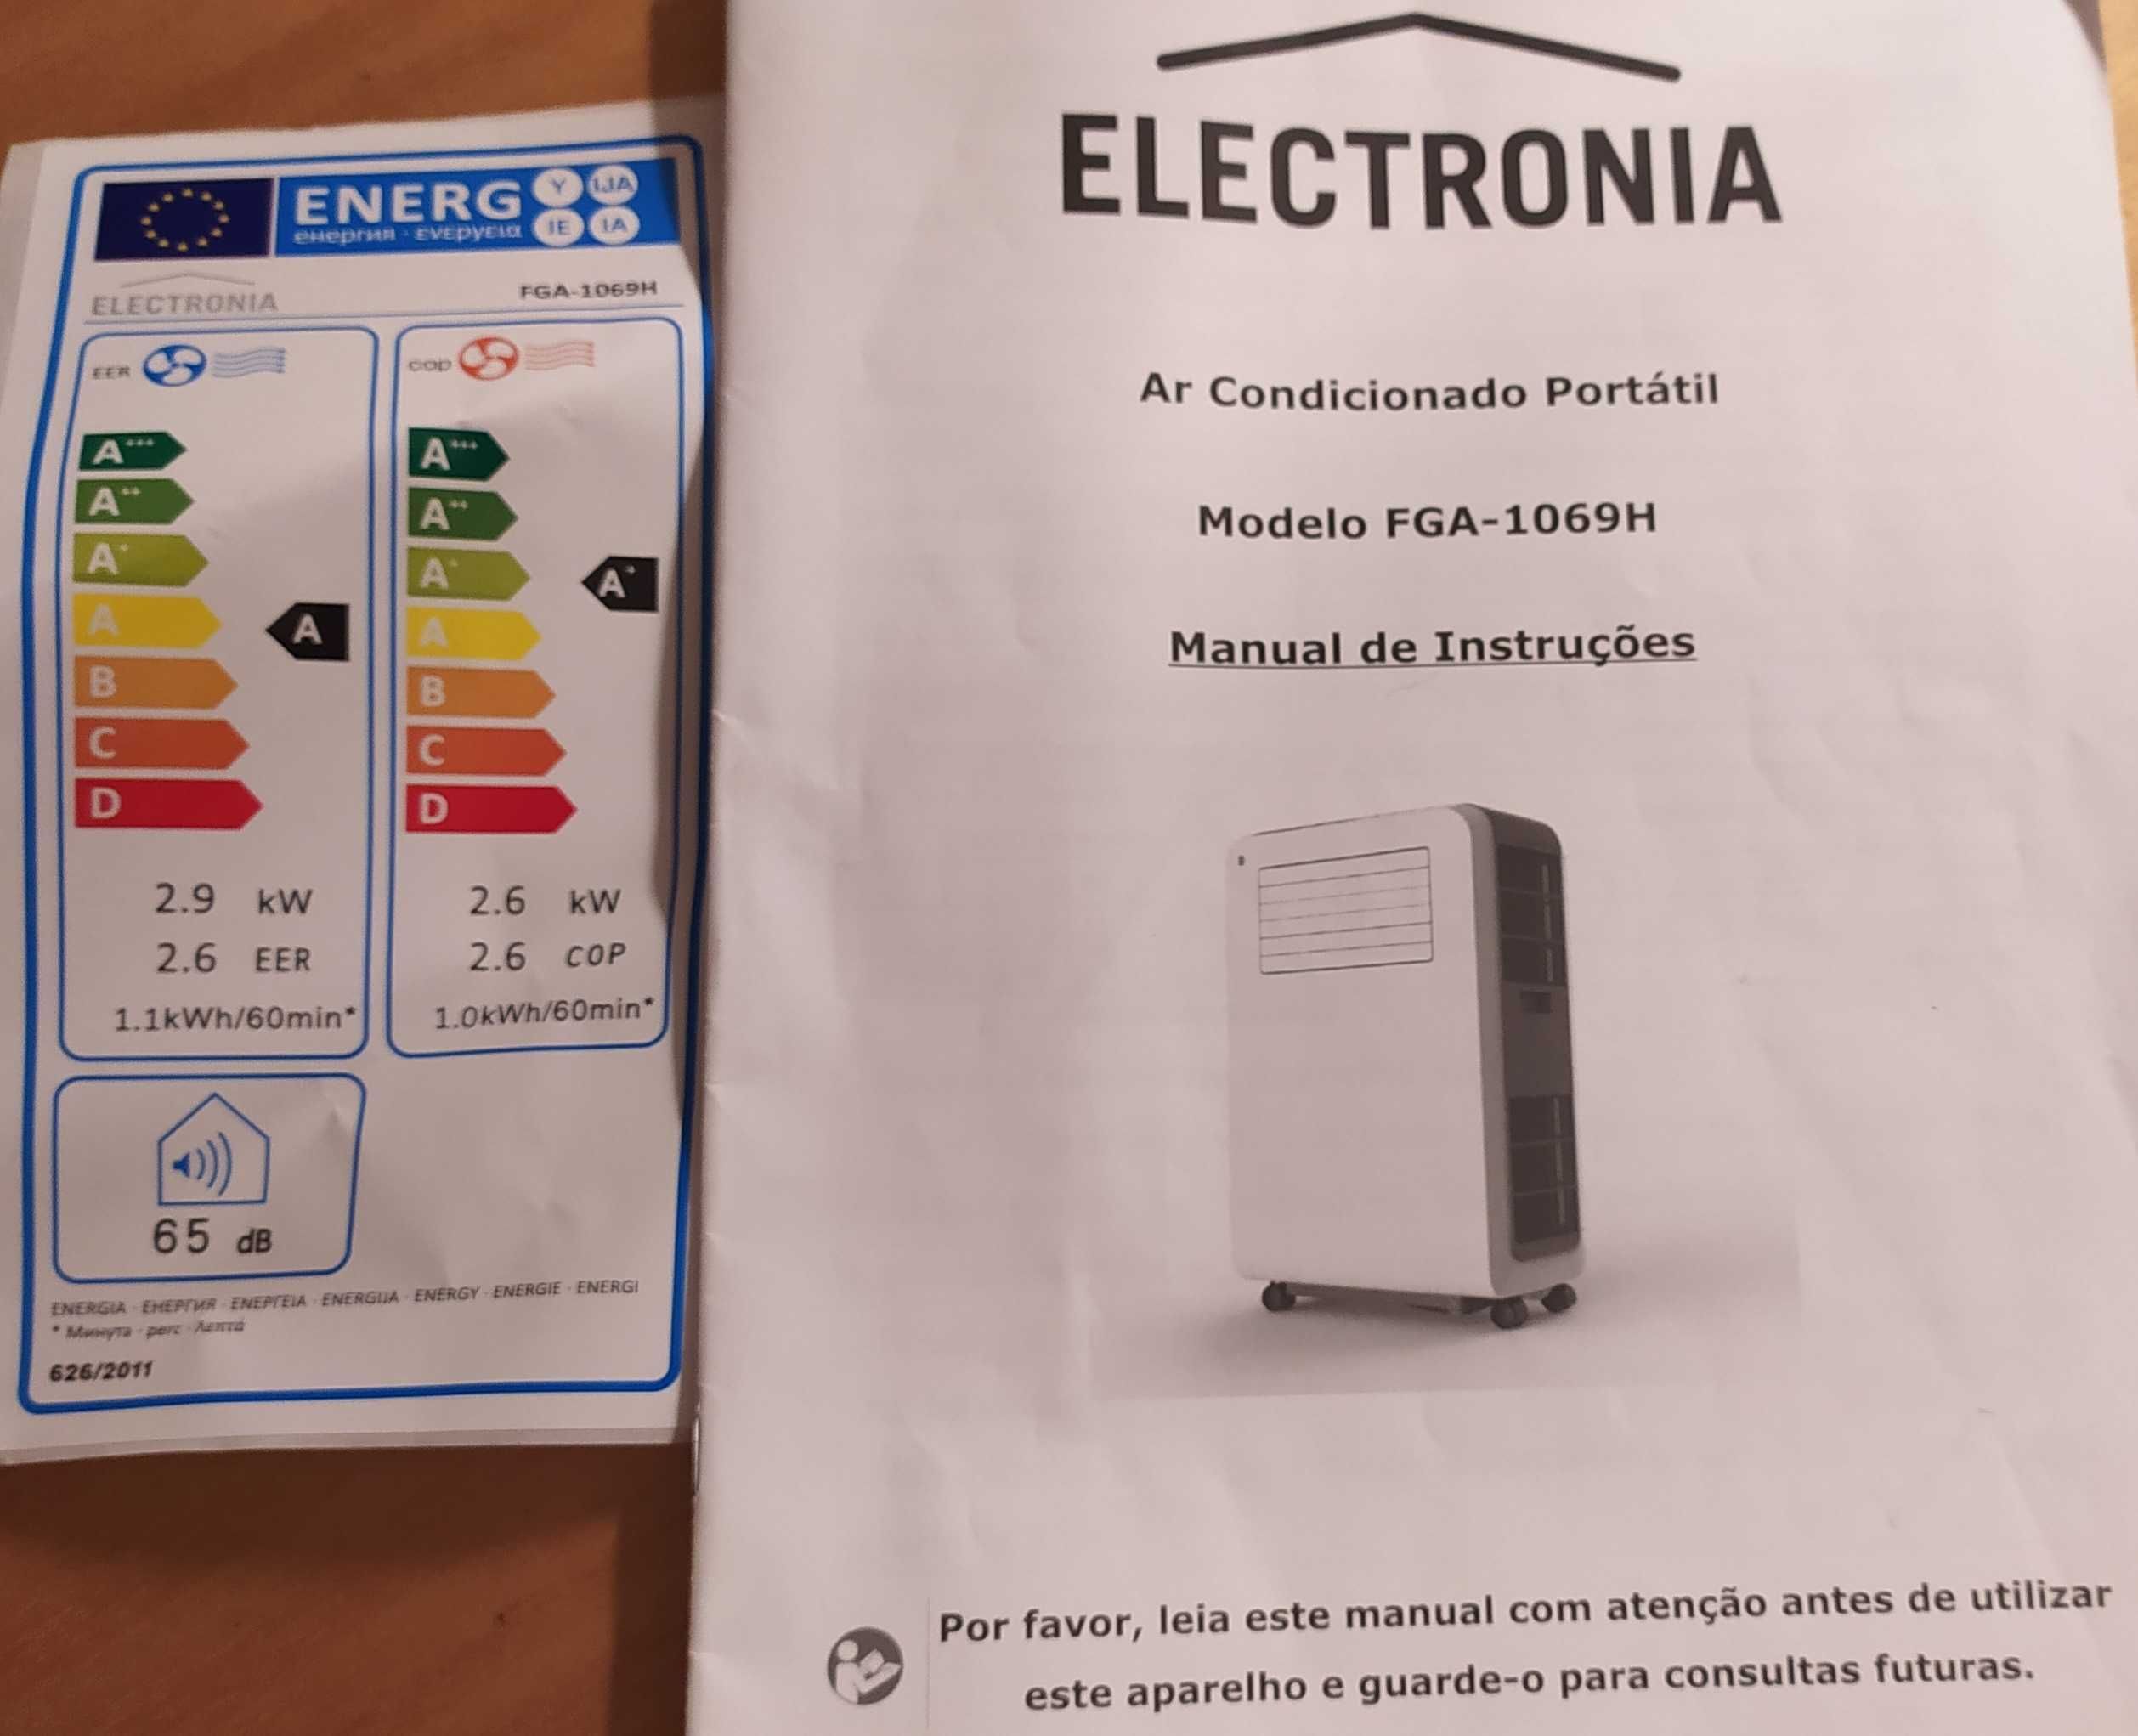 Ar Condicionado Portátil Electronia FGA-1069H